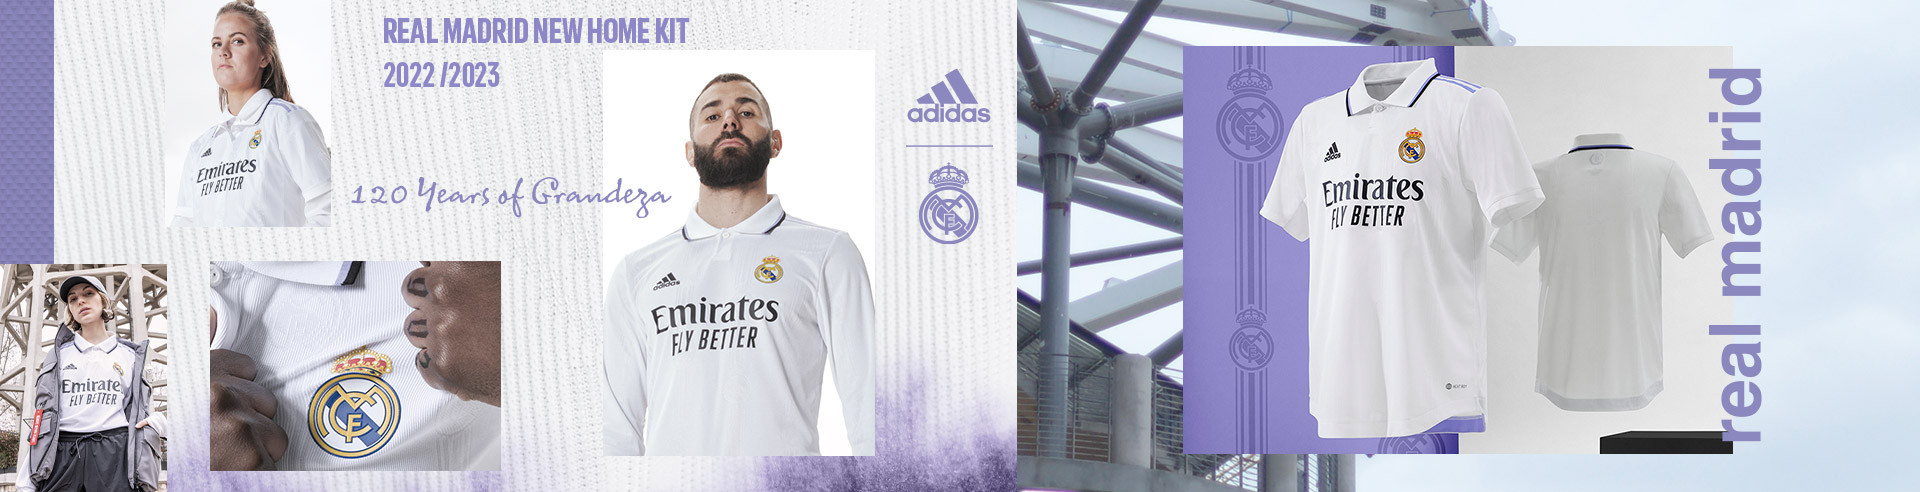 Camiseta Courtois Real Madrid Oficial 2018 2019 portero Adulto Niño Thibaut 